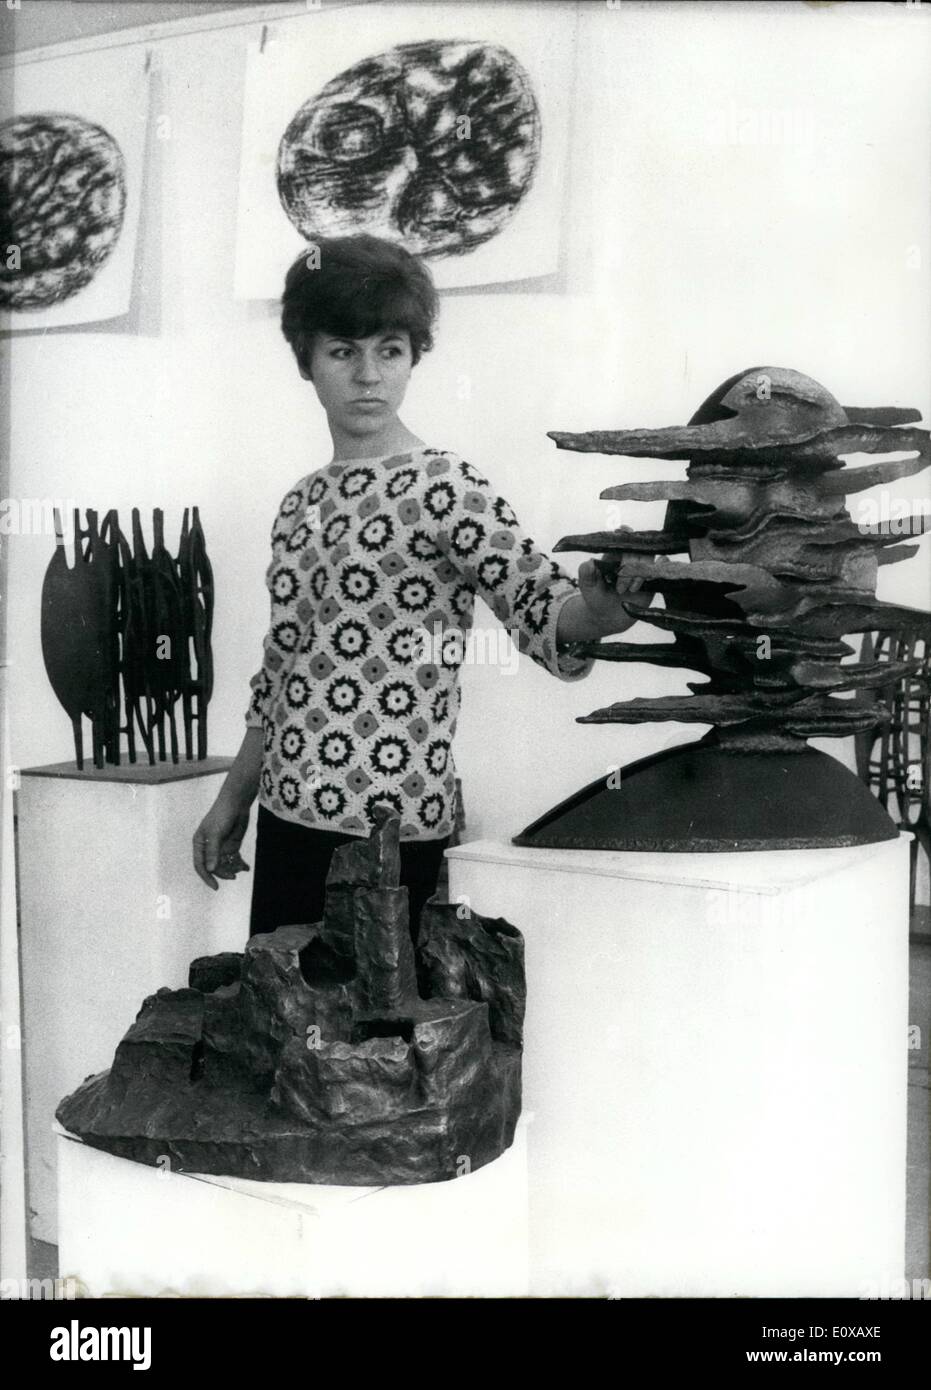 11. November 1965 - in der Berliner Galerie '' S ''; der berühmte deutsche Bildhauer Ursula Sax stellt ihre Skulpturen 23-11 - 65 till 2 Stockfoto